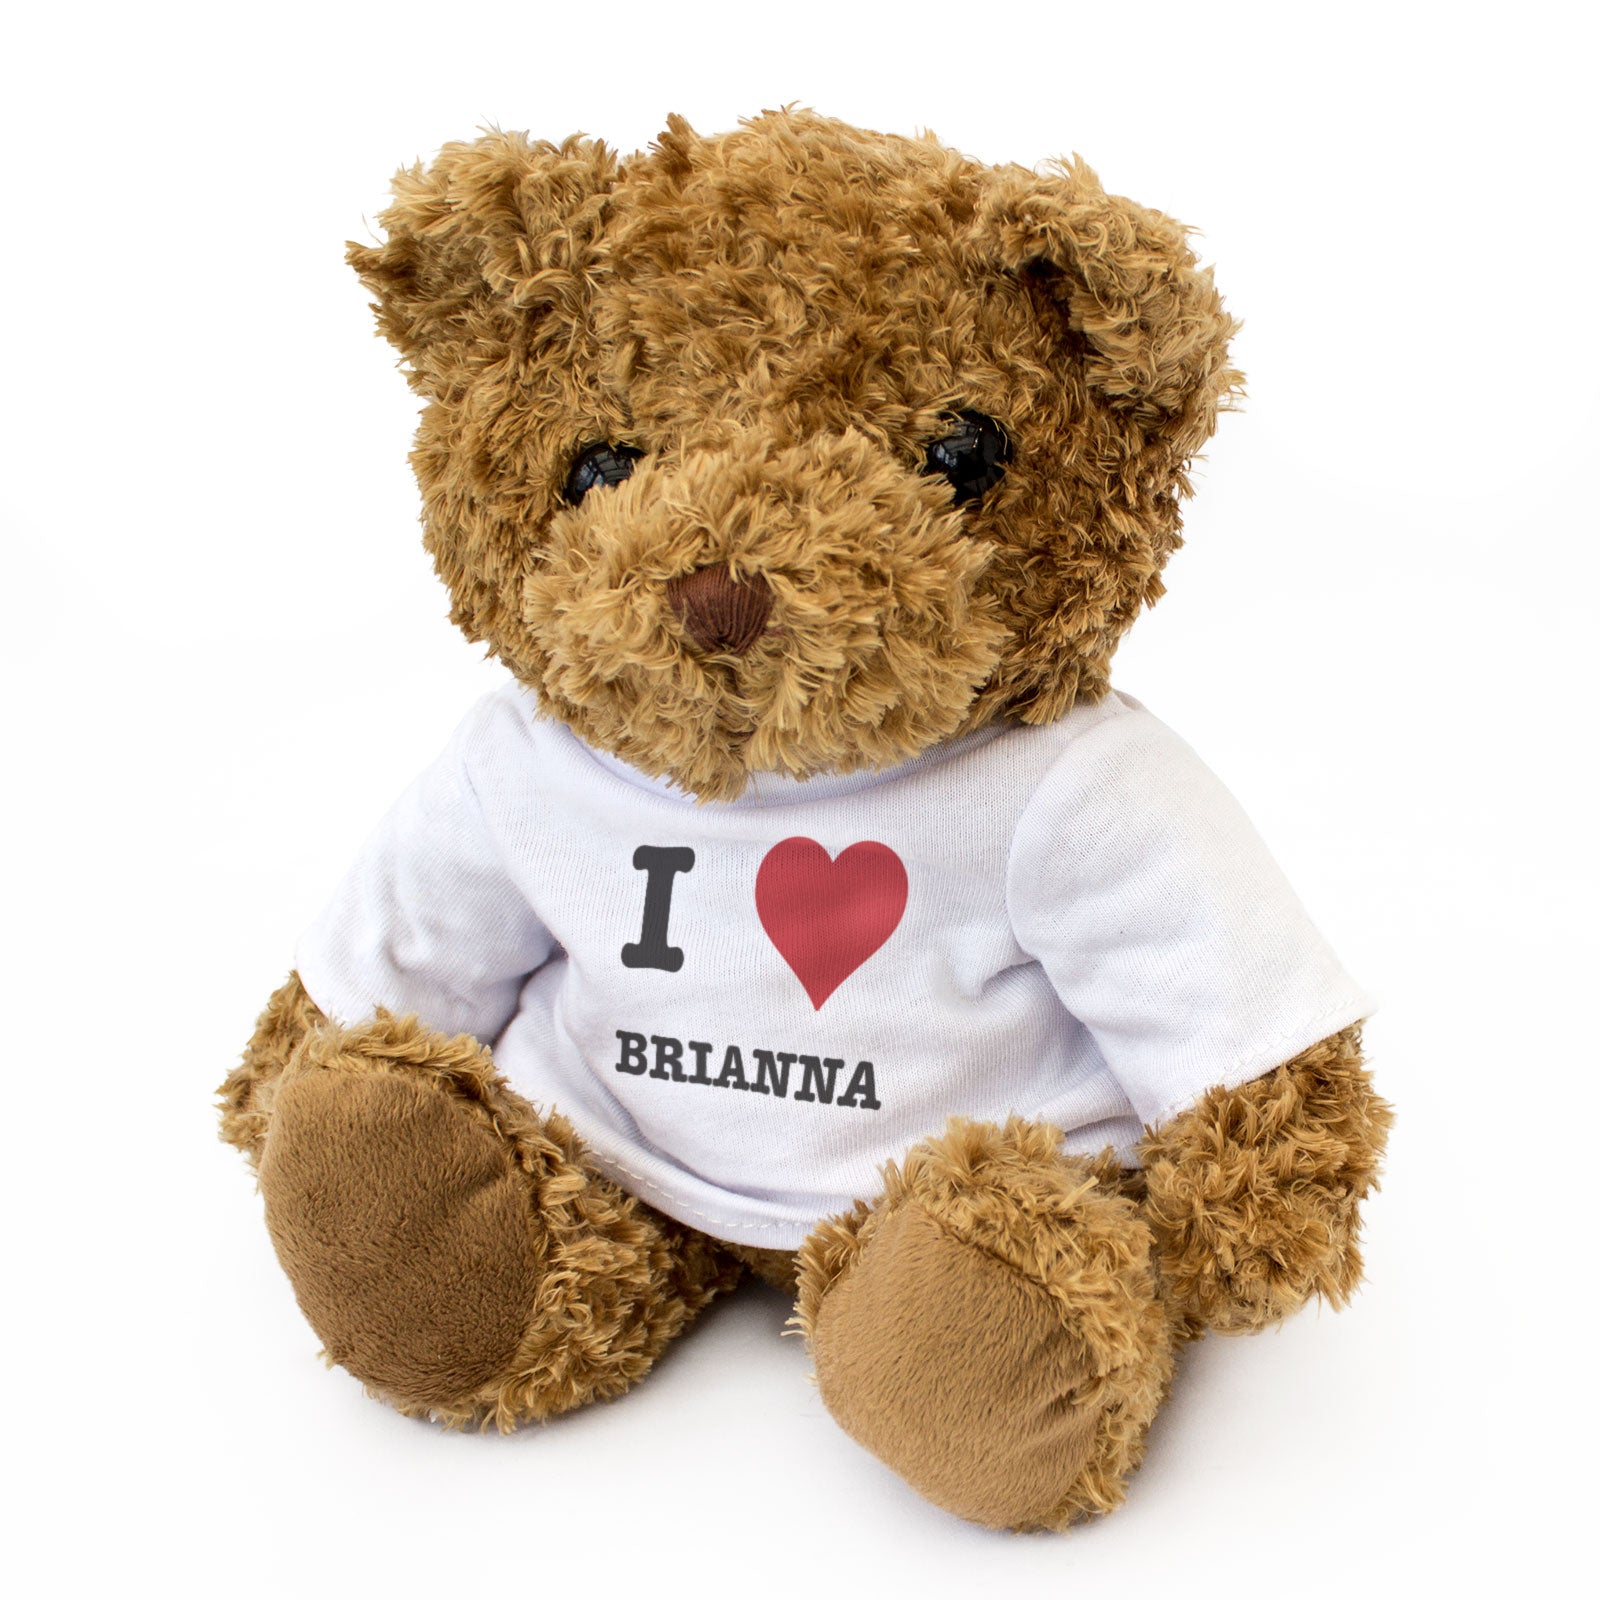 I Love Brianna - Teddy Bear